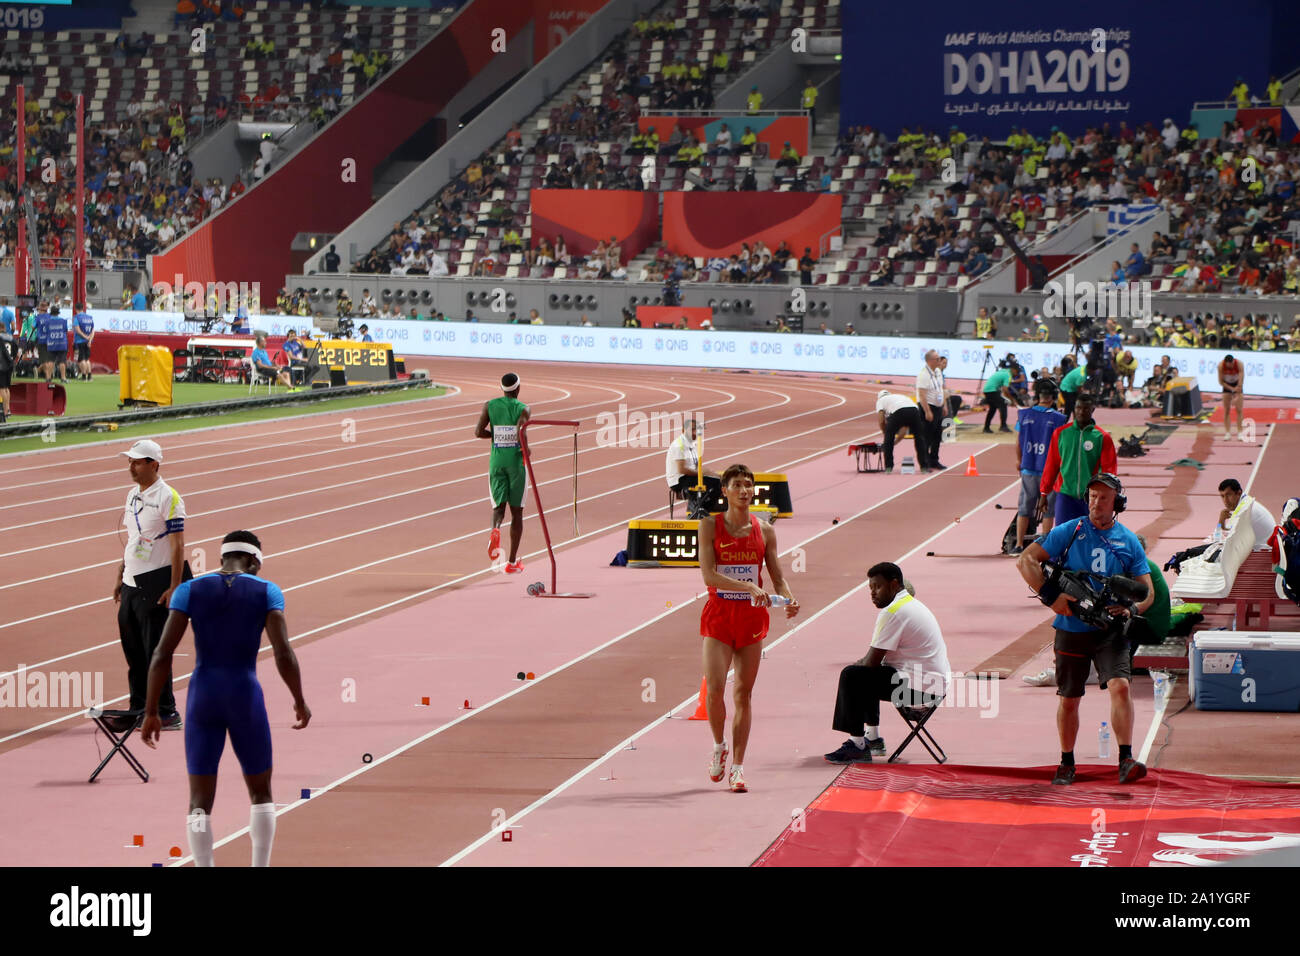 Doha/Katar - September 29, 2019: Chinas Fang Yaoqing bereitet sich auf seine nächste springen während der Endrunde der Männer Dreisprung als Teil der IAAF Leichtathletik WM 2019 Stockfoto